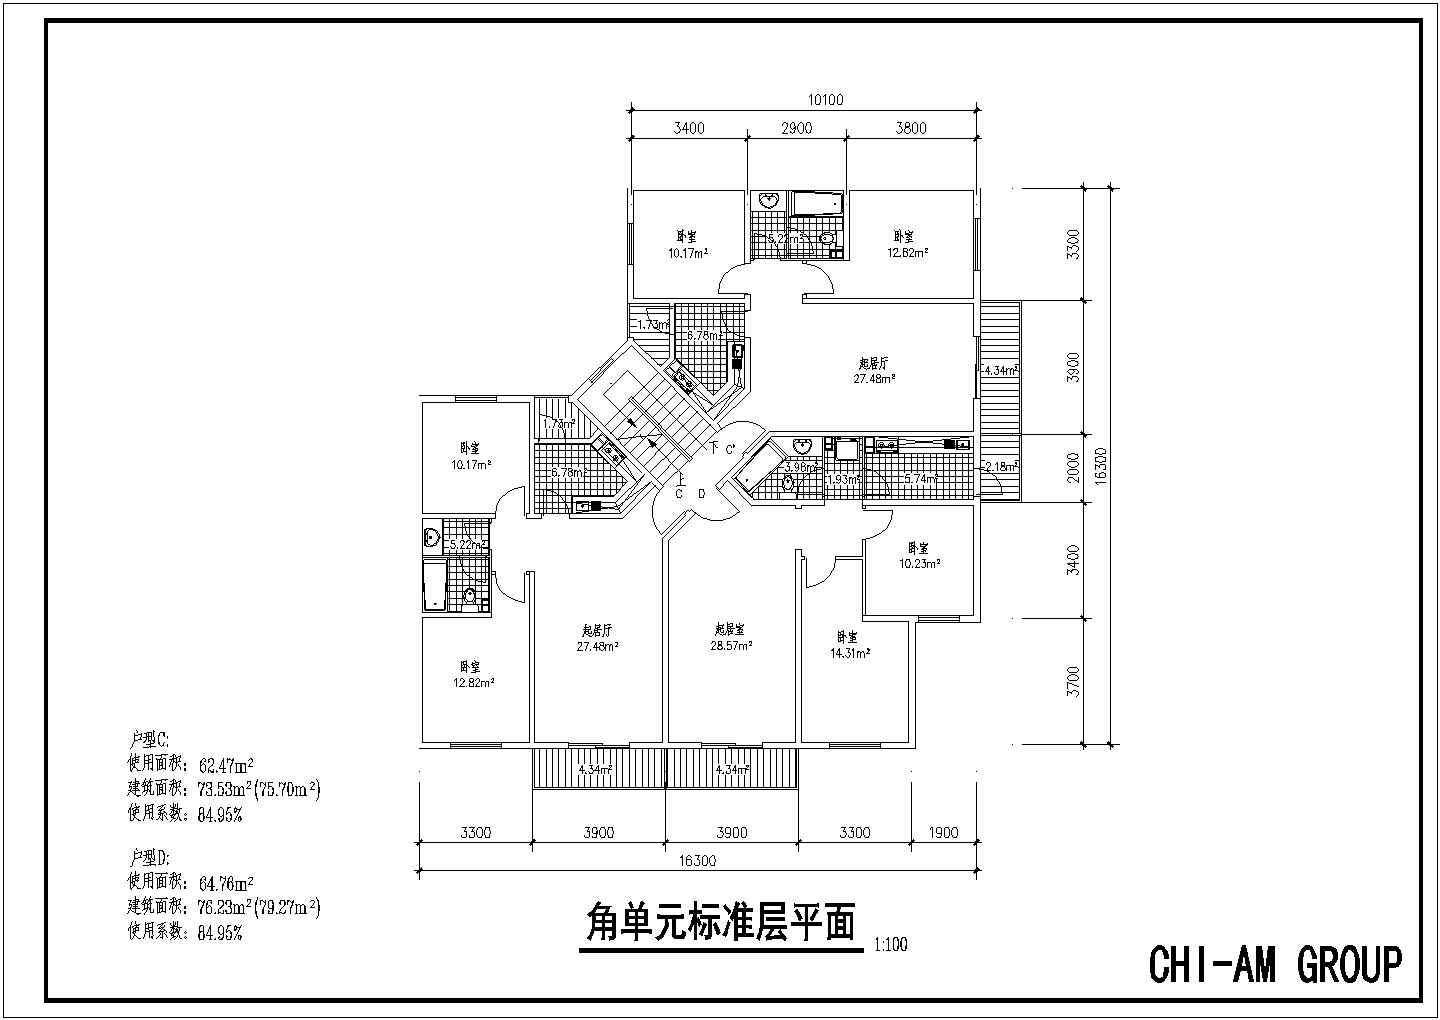 83平方米小高层转角单元一梯住宅户型设计cad图(含效果图)